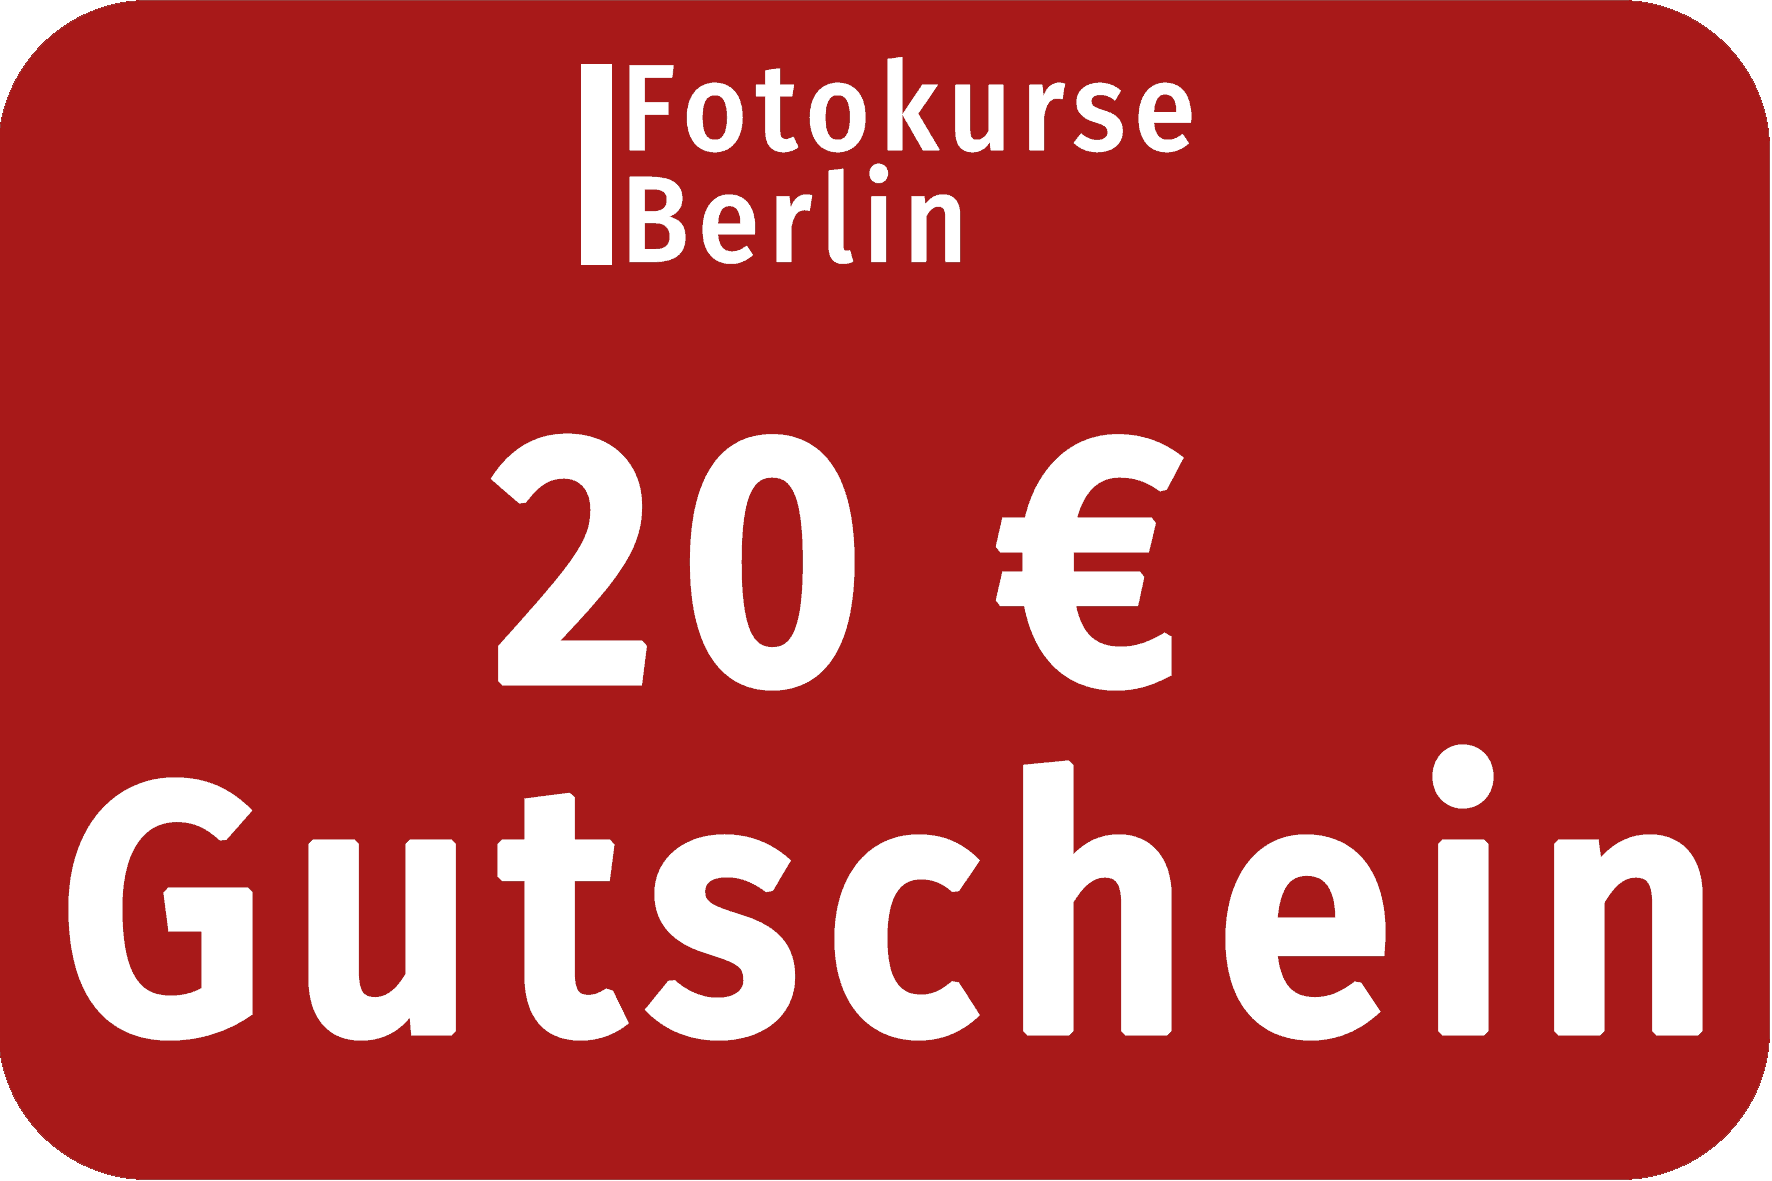 20 Euro Gutschein FotokurseBerlin.de